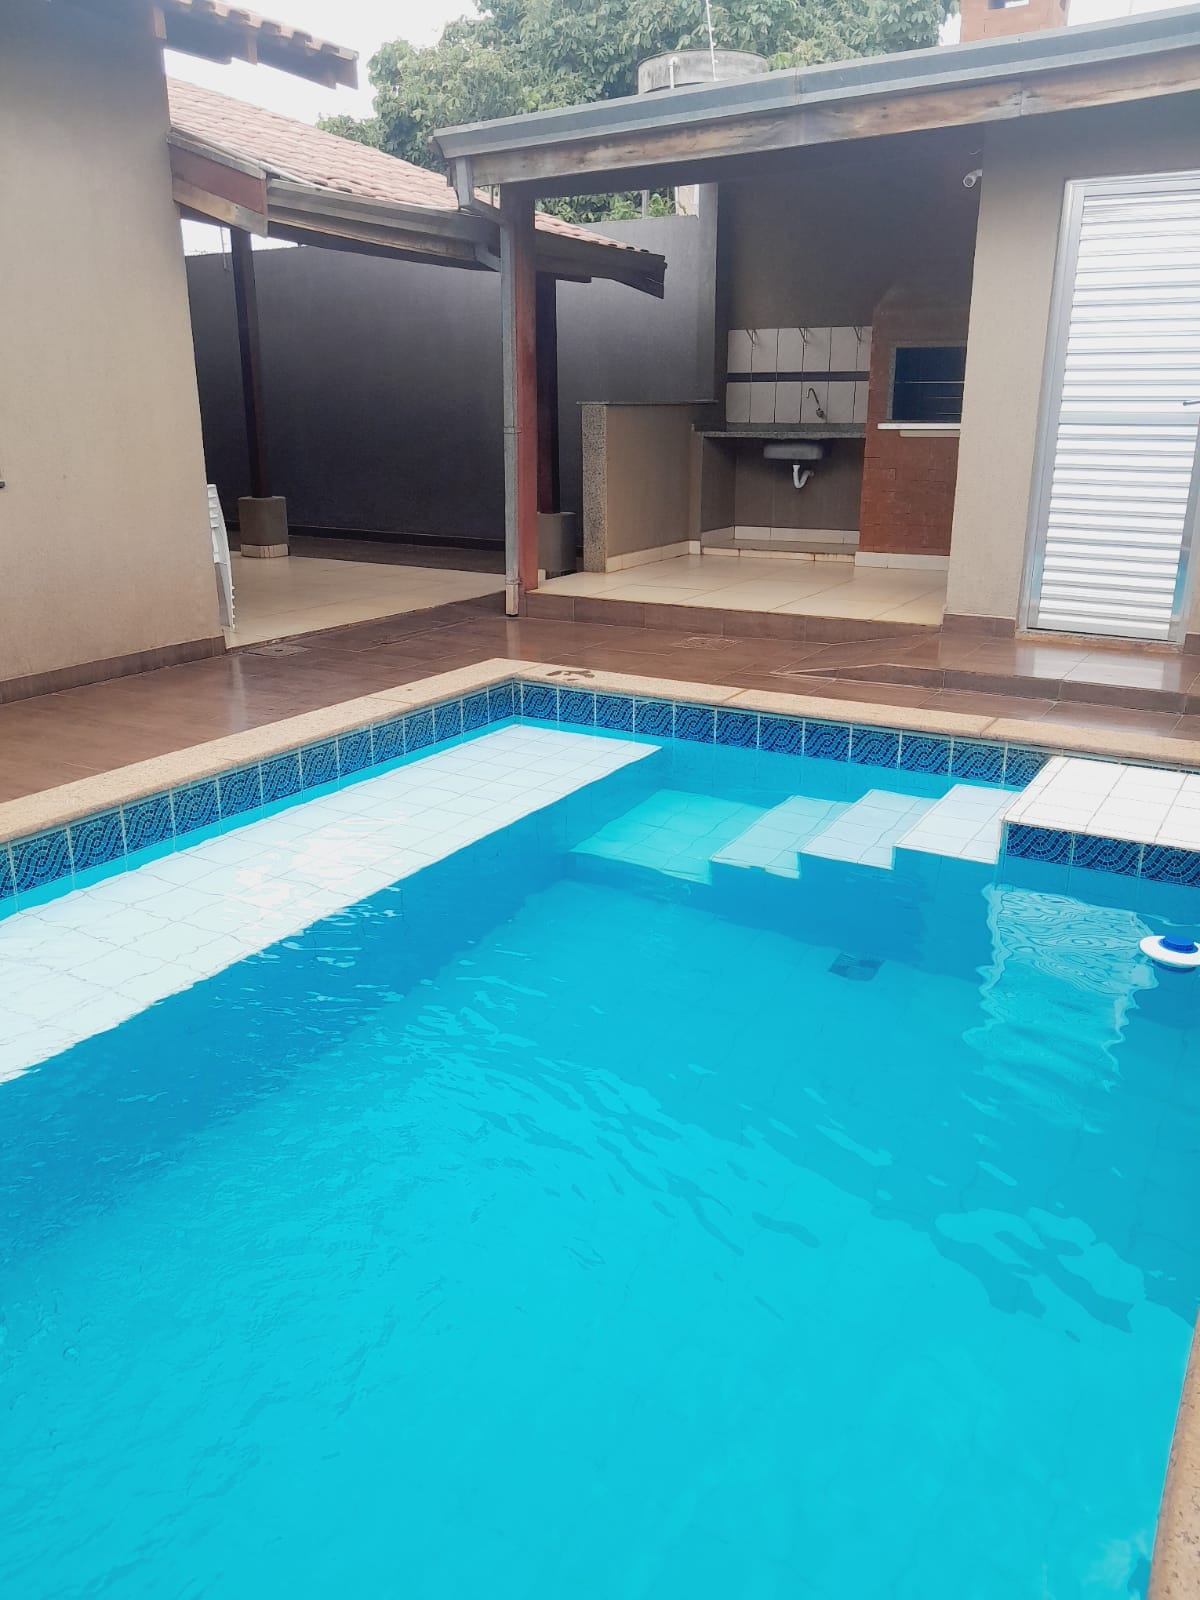 Casa com piscina - 4 quartos com ar condicionado